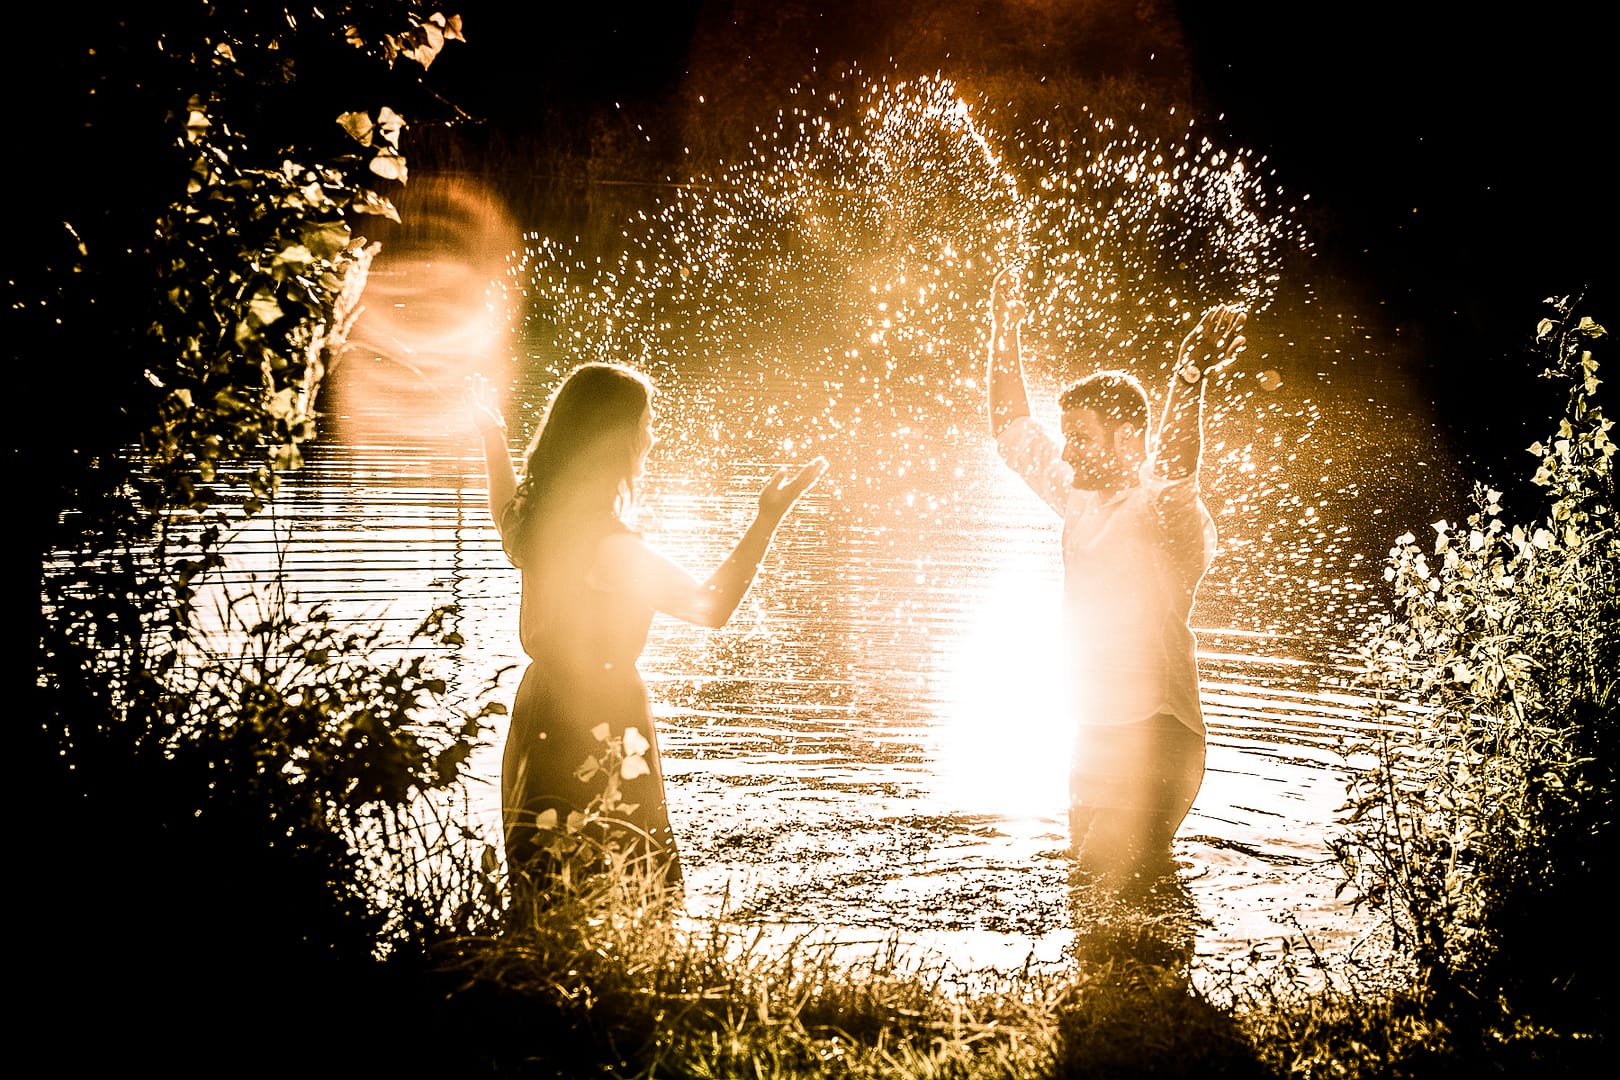 partner-fotoshooting: Ein Liebespaar steht in einem See knietief mit Abstand zu einender und schauen sich an. Sie werfen beide gleichzeitig das Wasser aus dem See hoch. Durch die Strahlen der untergehenden Sonne leuchten die Wassertropfen regelrecht.